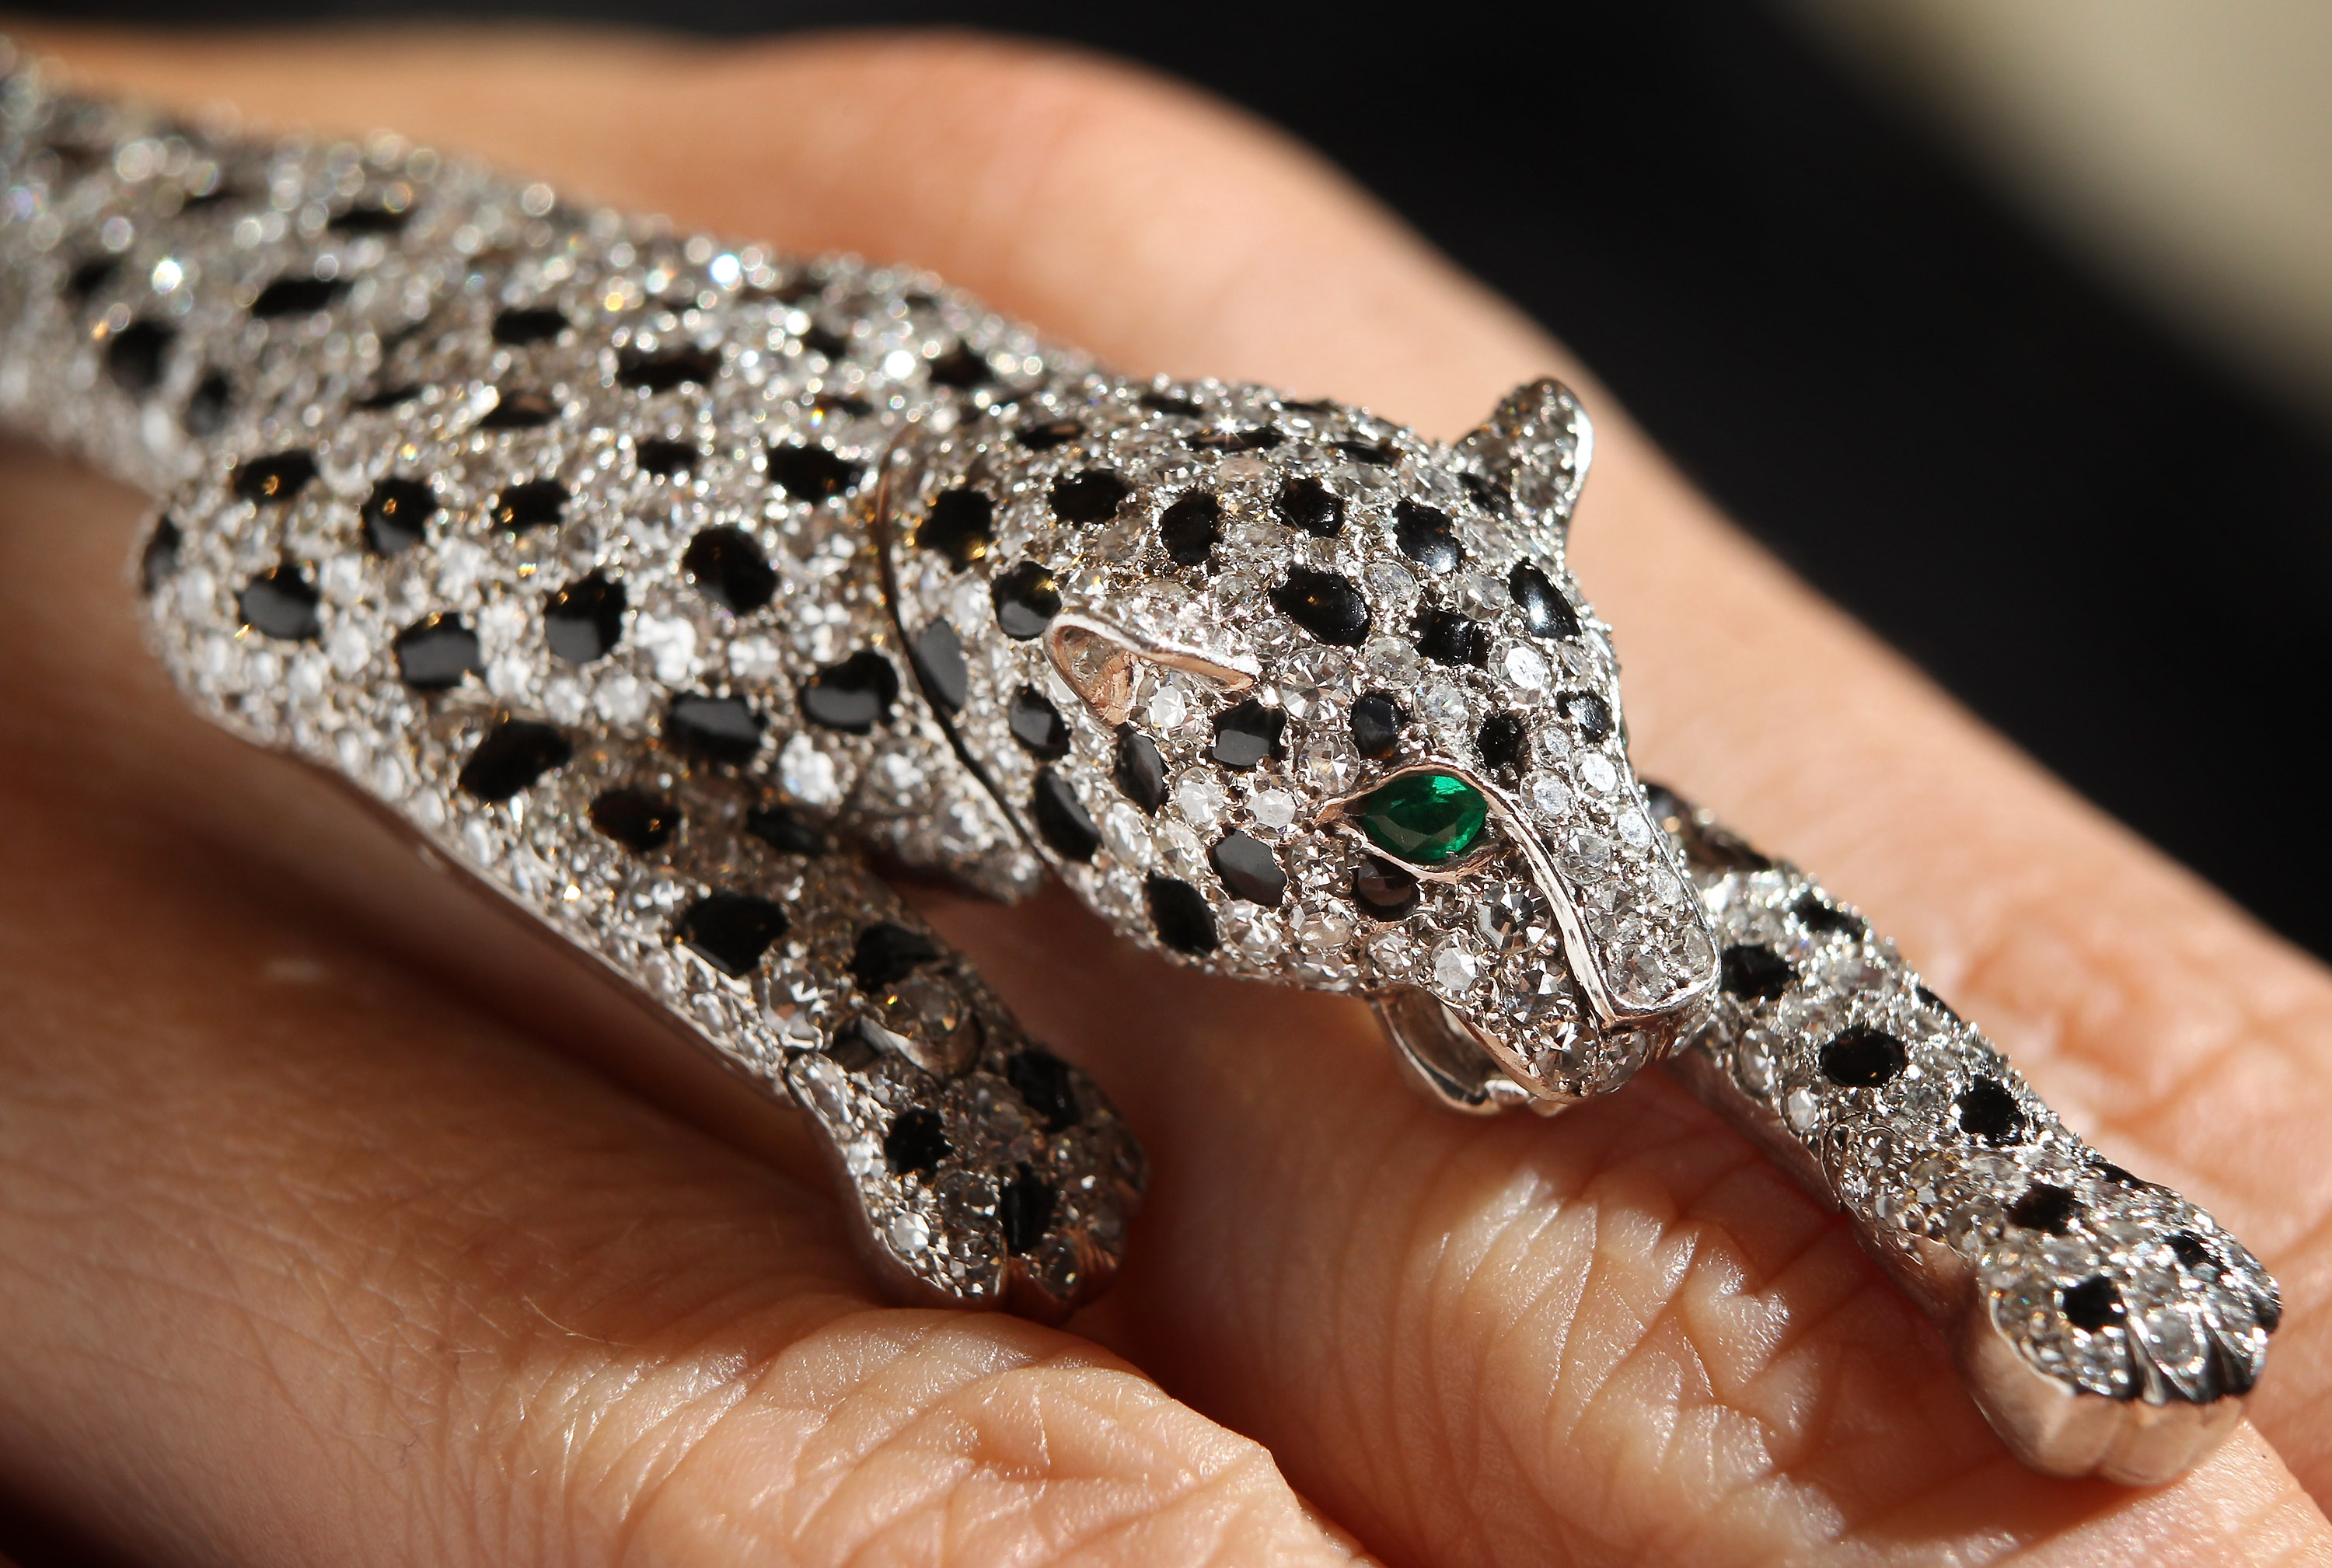 cartier jaguar jewelry